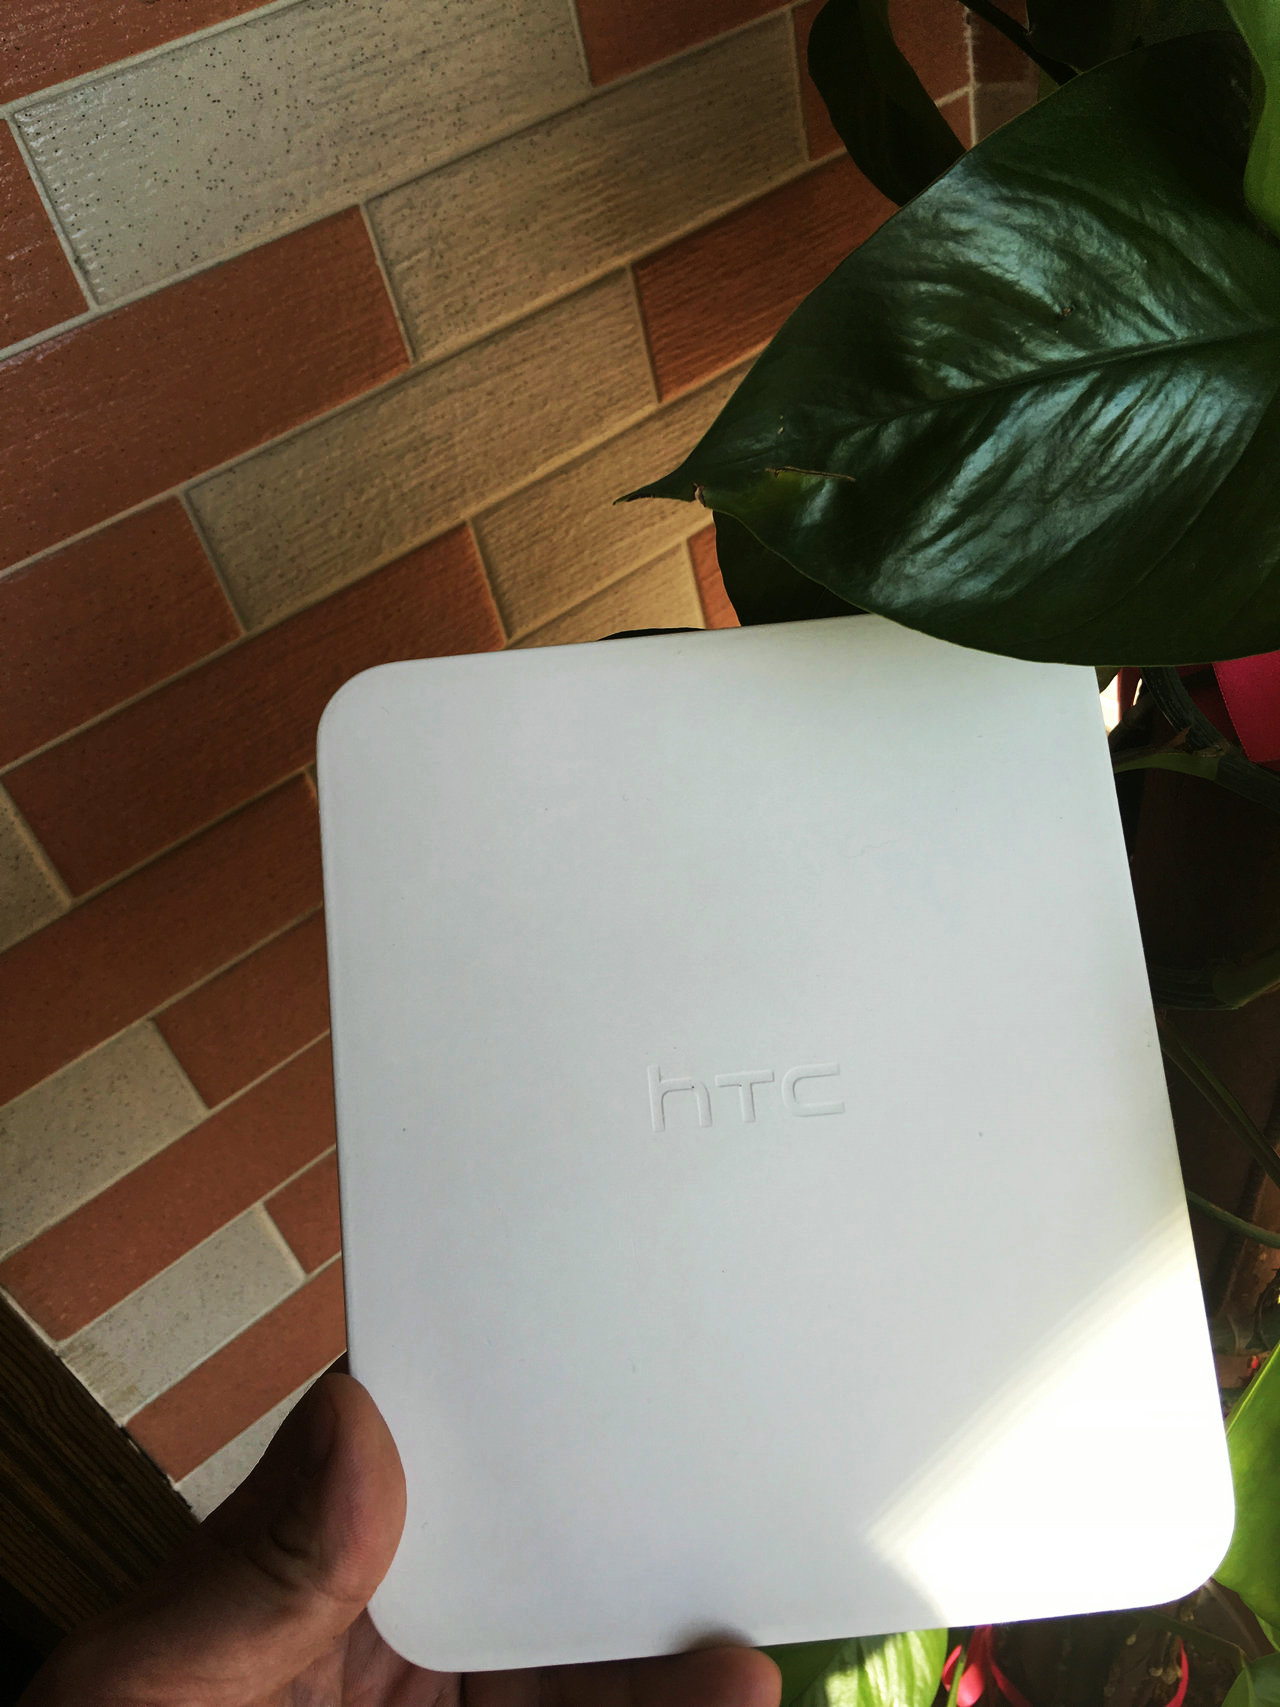 原创-HTC ONE X9冰原银版中立评测之开箱外观篇